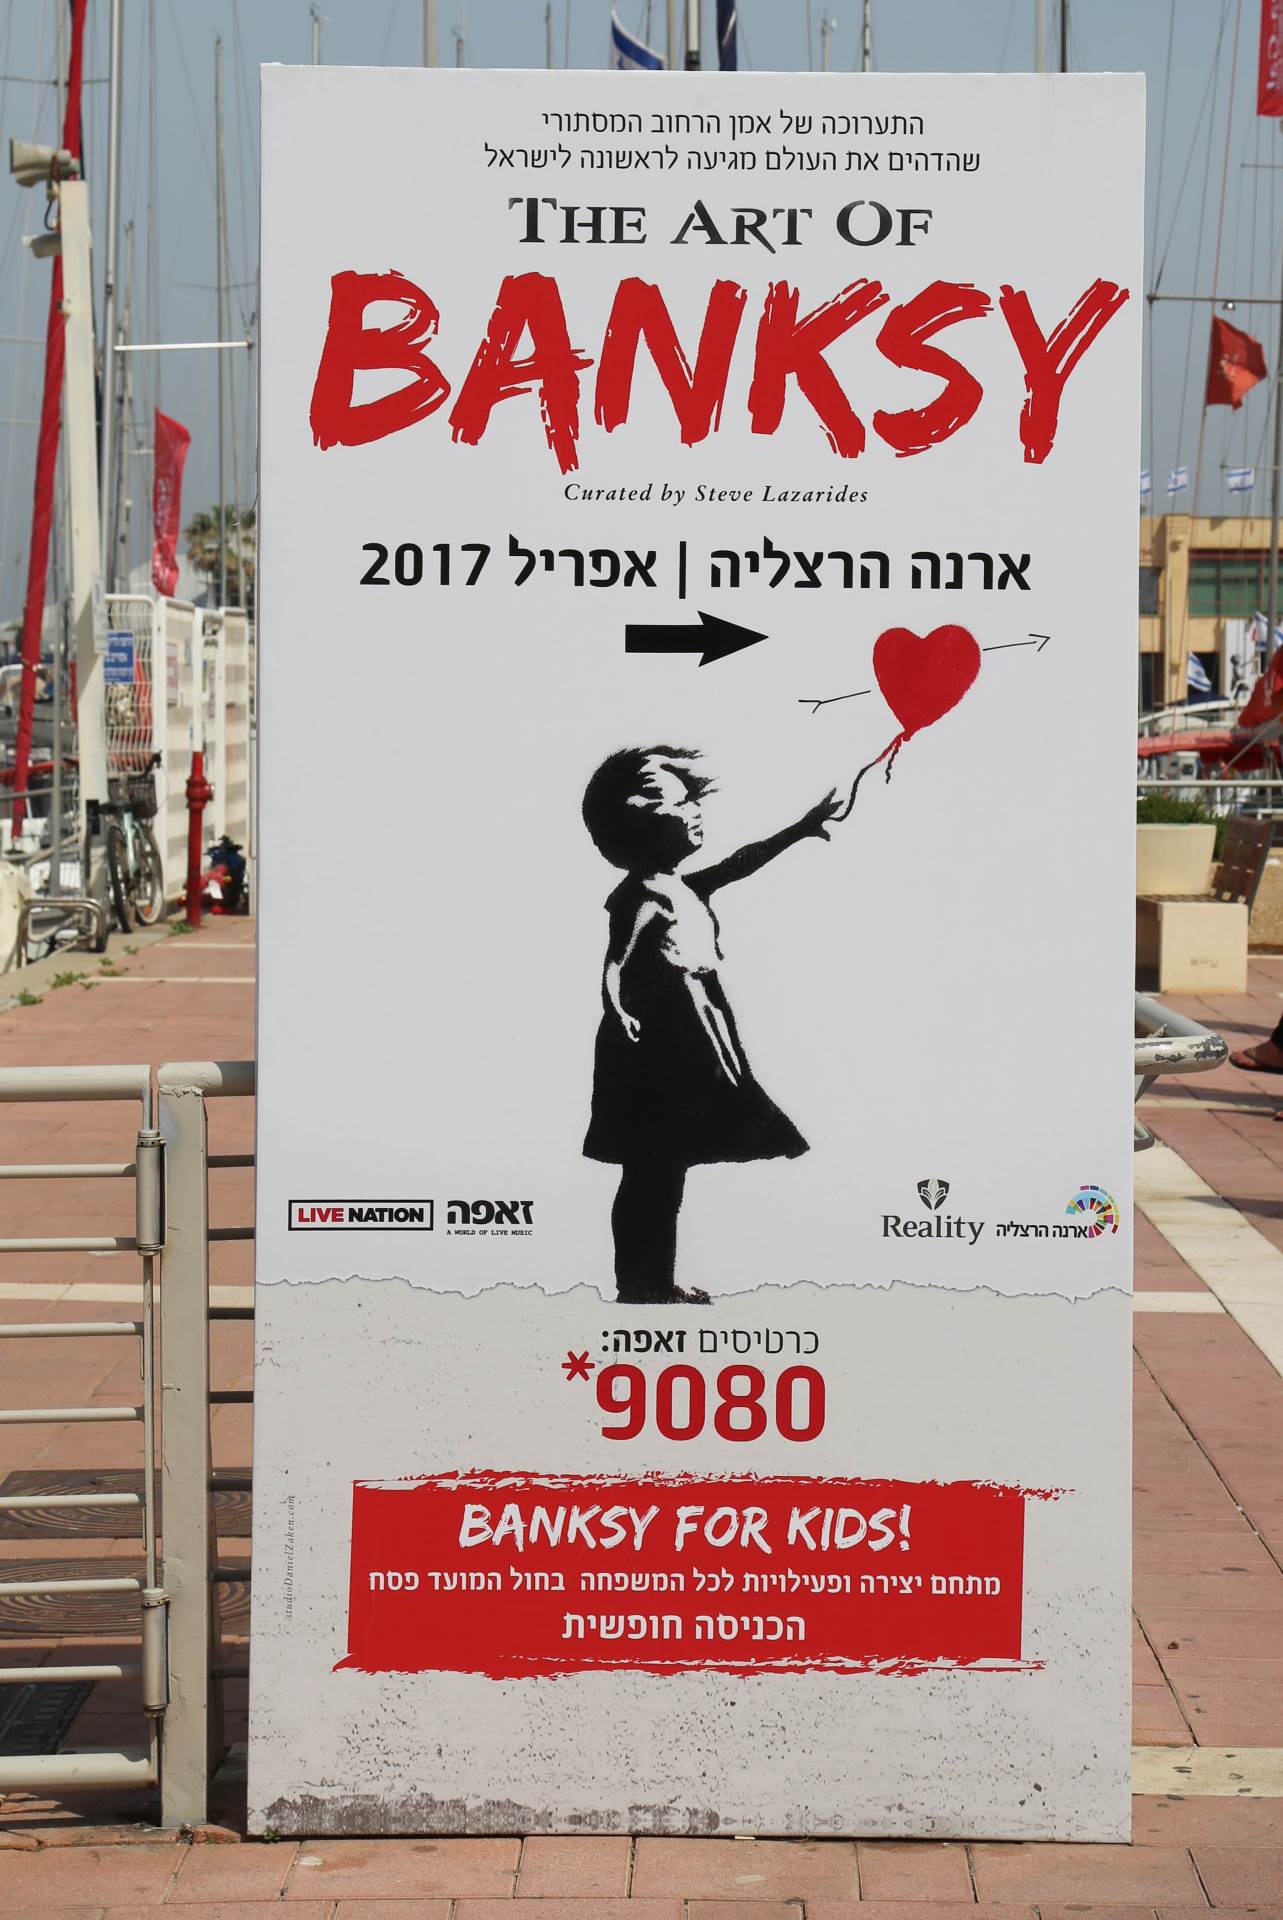 Zadivljeni smo najnovijim Banksyjevim djelom od neprocjenjive vrijednosti